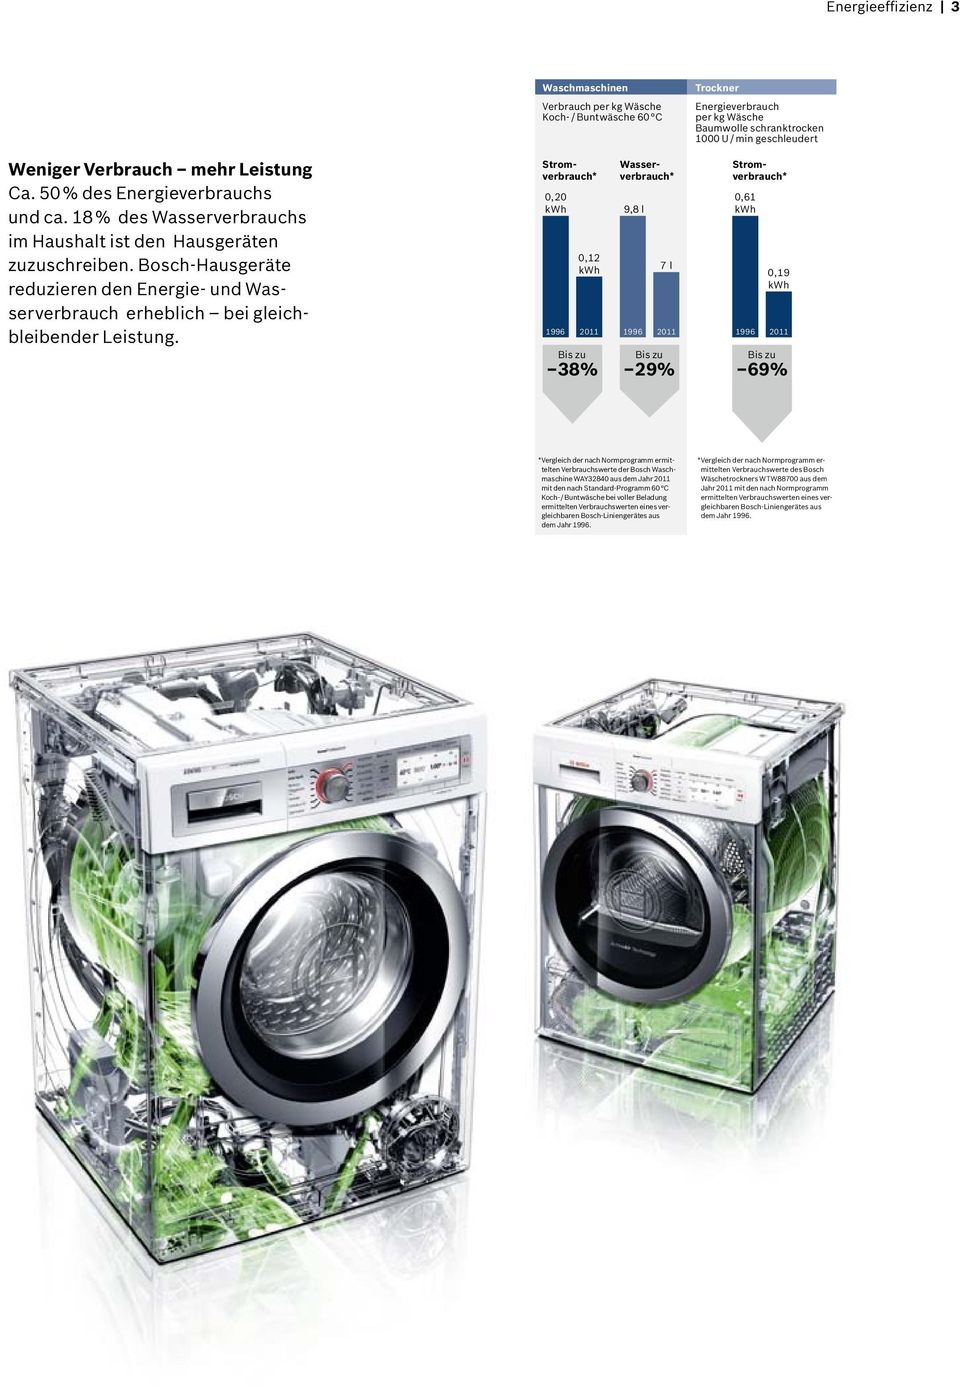 Bosch-Hausgeräte reduzieren den Energie- und Wasserverbrauch erheblich bei gleichbleibender Leistung.